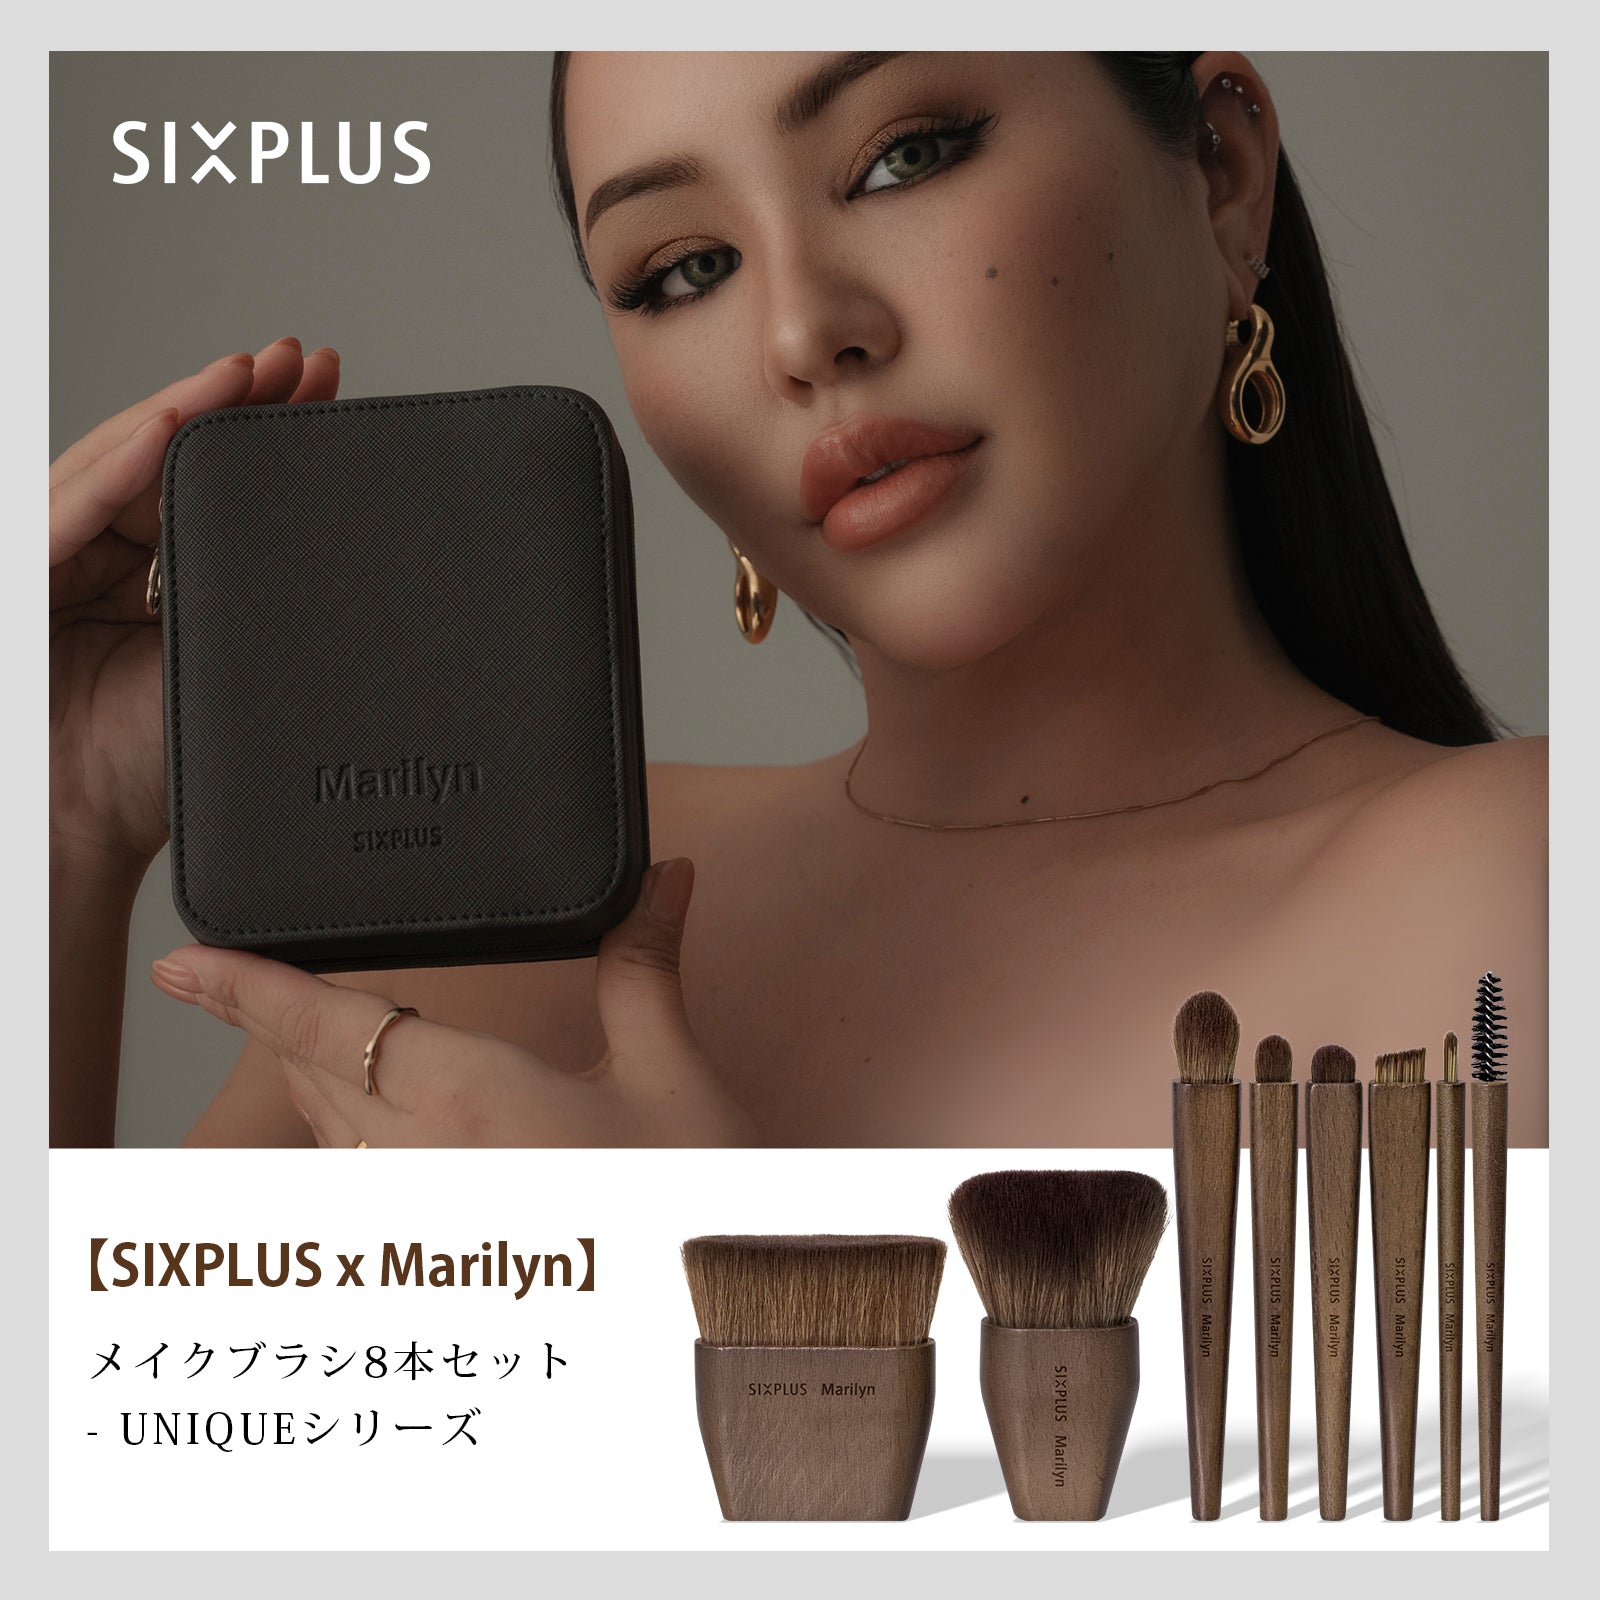 SIXPLUS X Marilyn Makeup Brush 8Pcs Six Plus UNIQUE Series